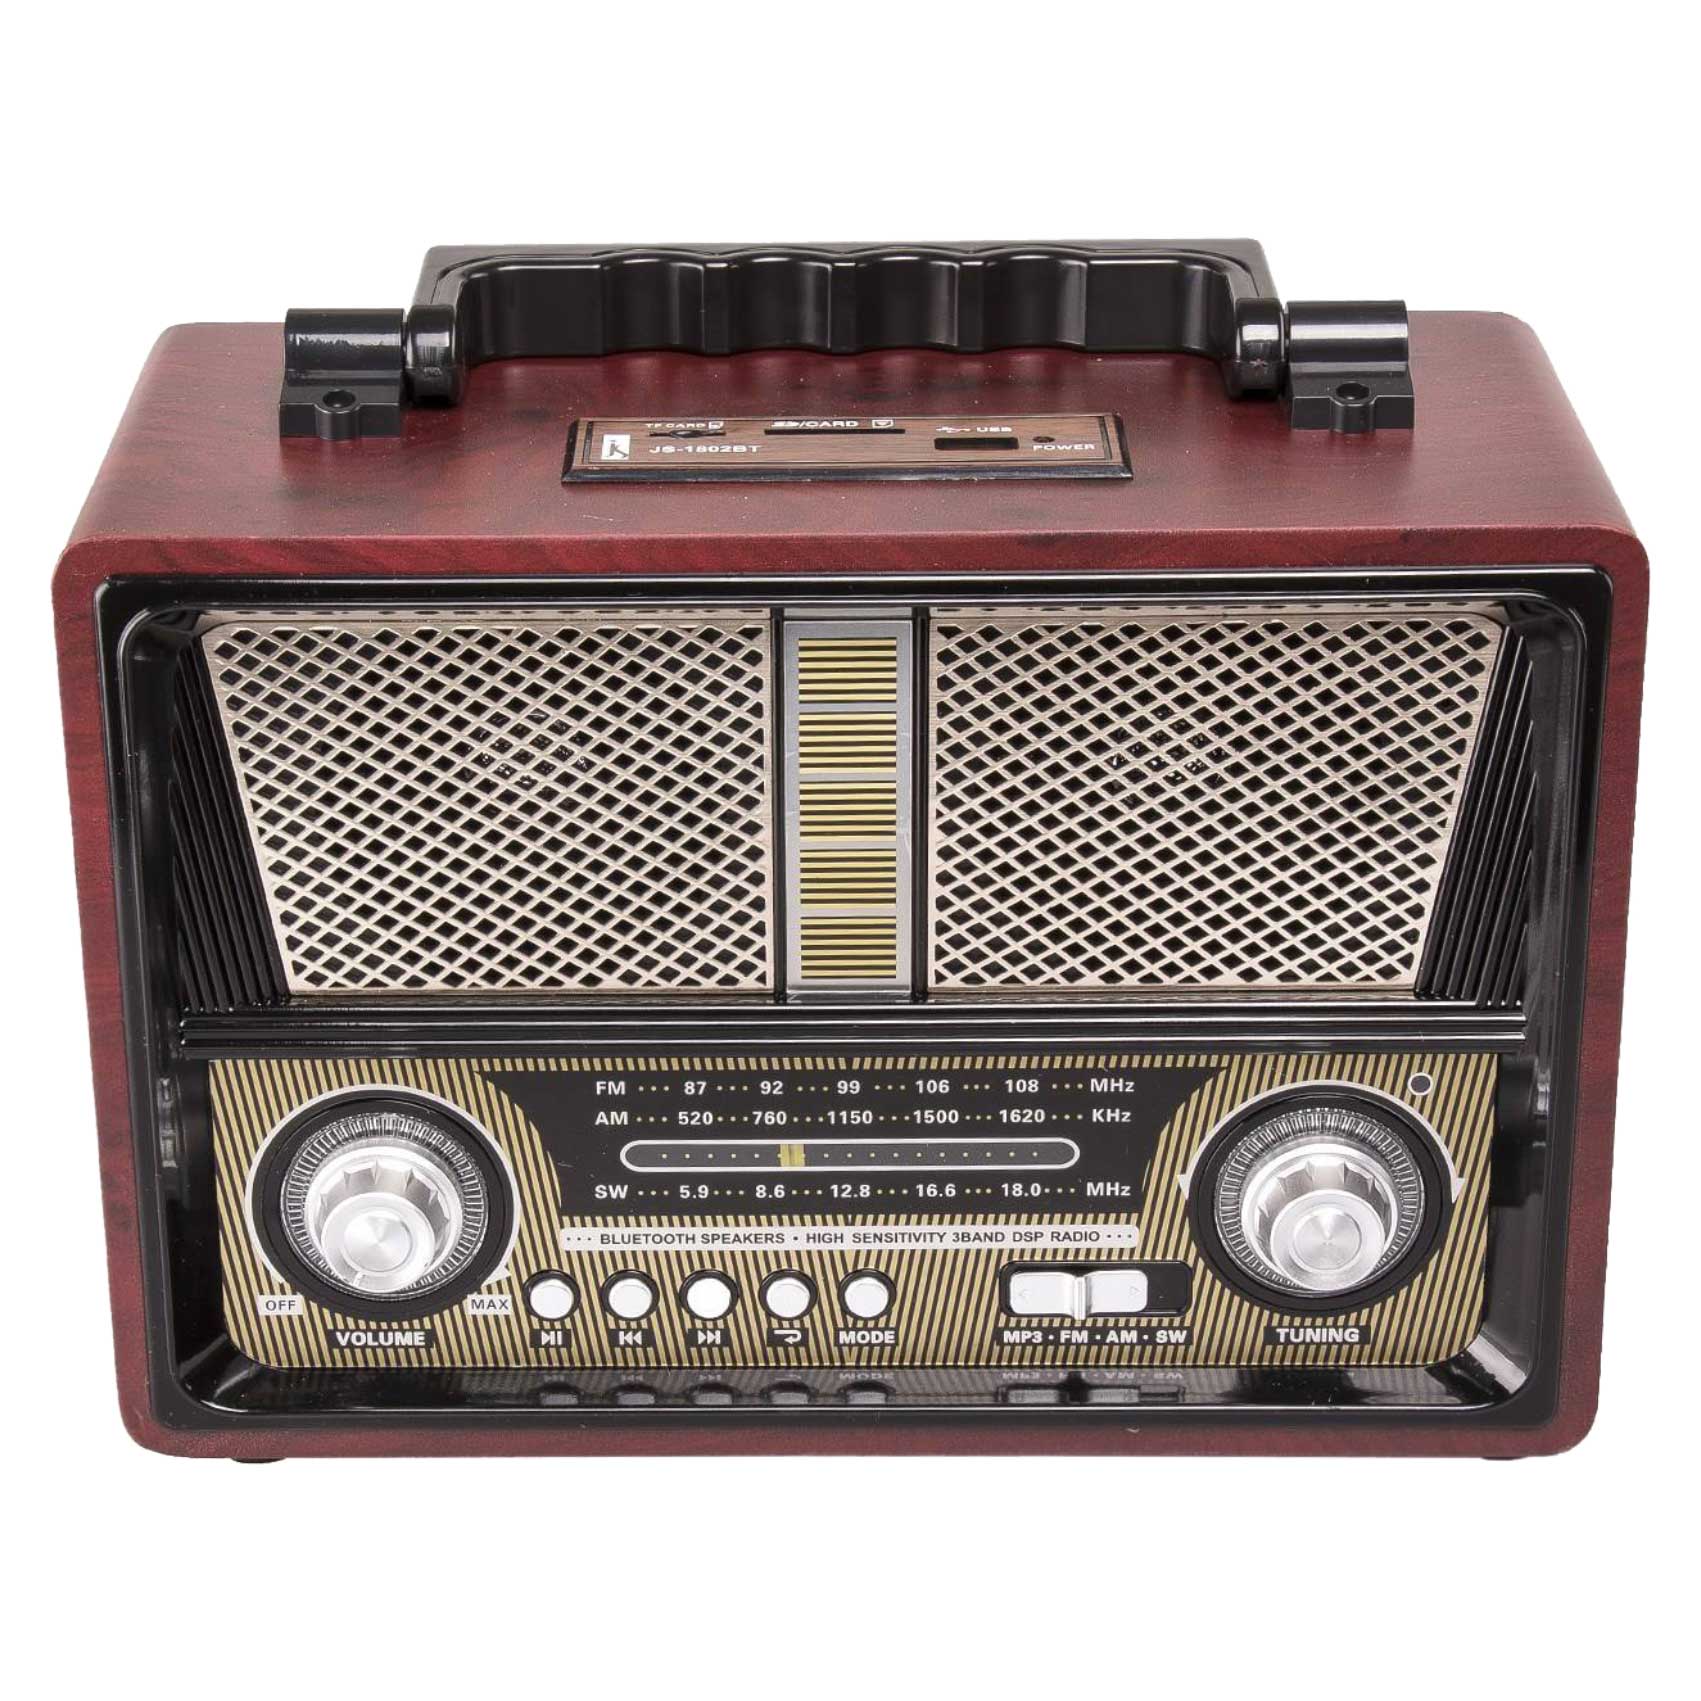 رادیو شارژی کلاسیک، رادیو کلاسیک با قابلیت های مدرن، قابلیت پخش فایلهای موزیک و صوتی MP۳،  استفاده از ۴ باتری UMI-۱ در مواقع اتمام شارژ،  قابلیت اتصال AUX، مدل 1802